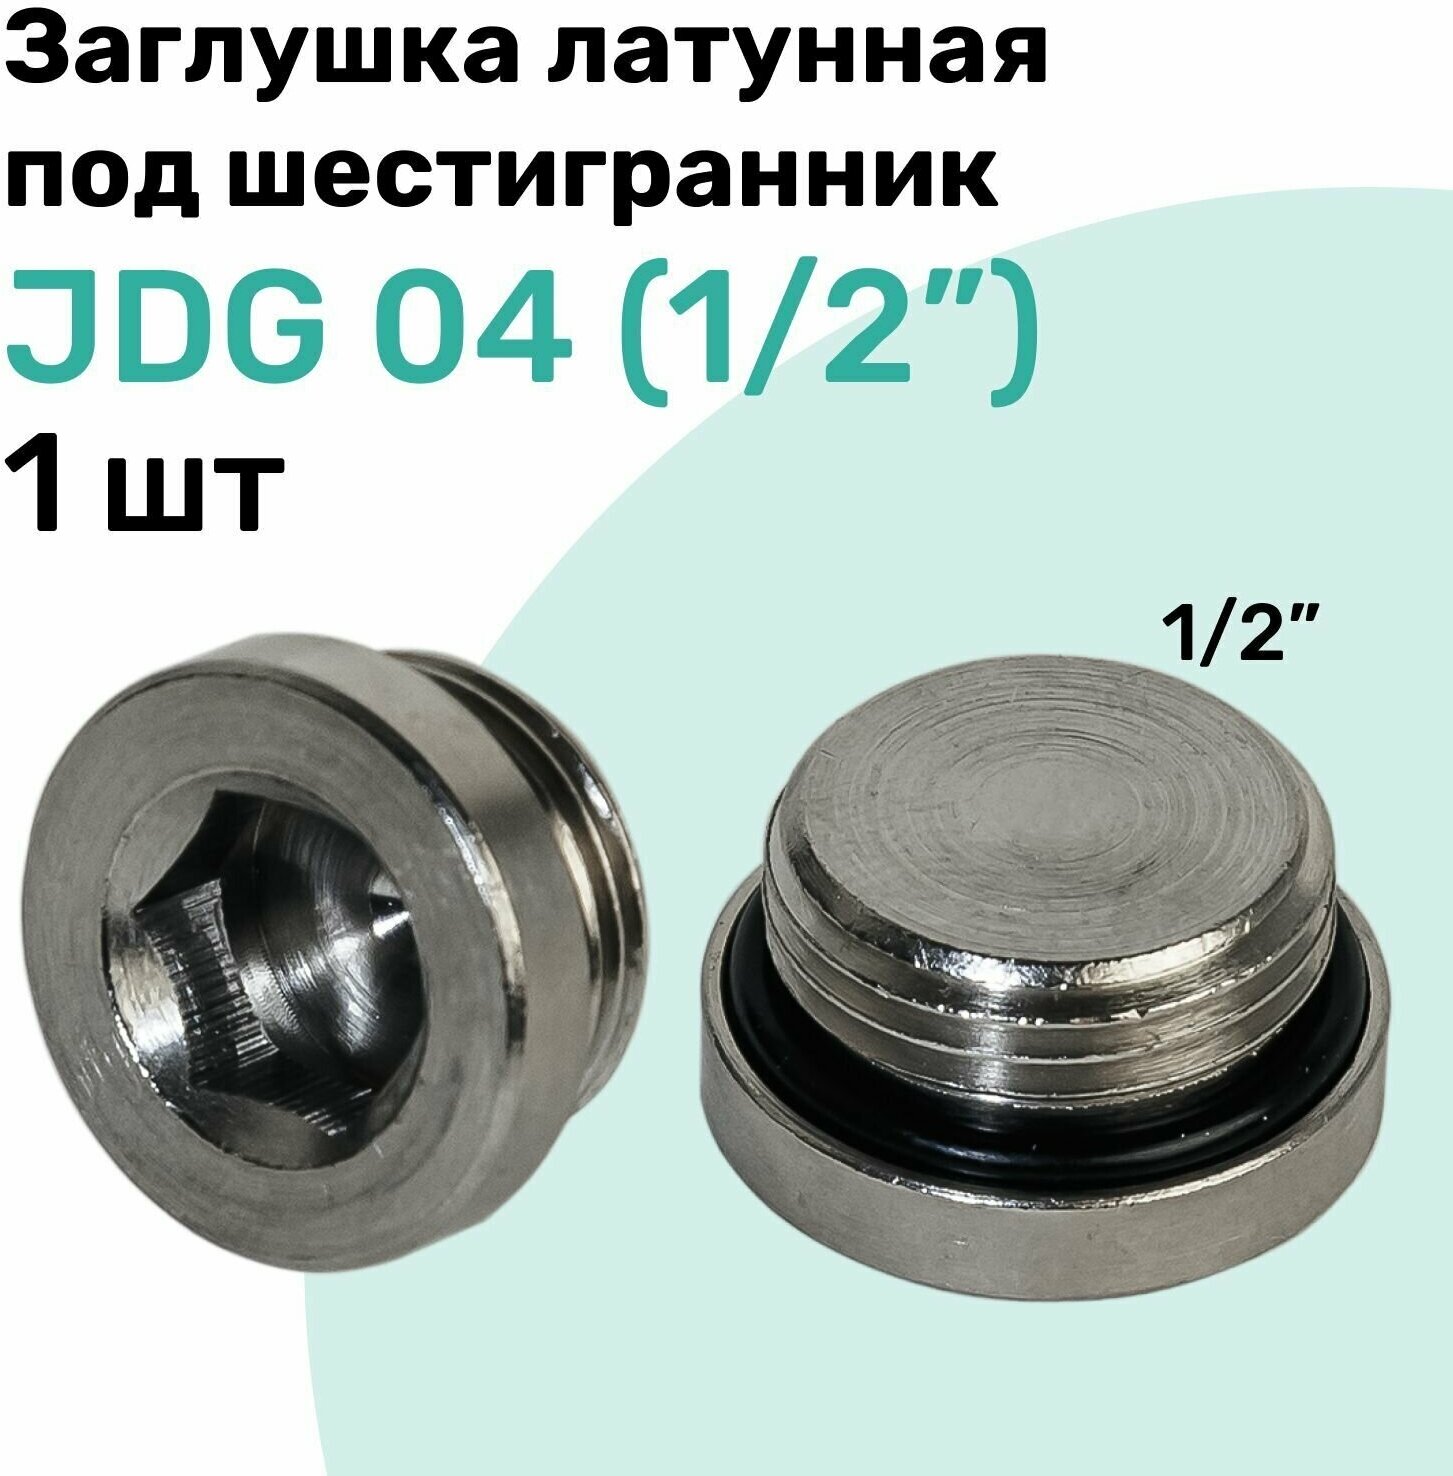 Заглушка латунная под шестигранник JDG 04 (R1/2